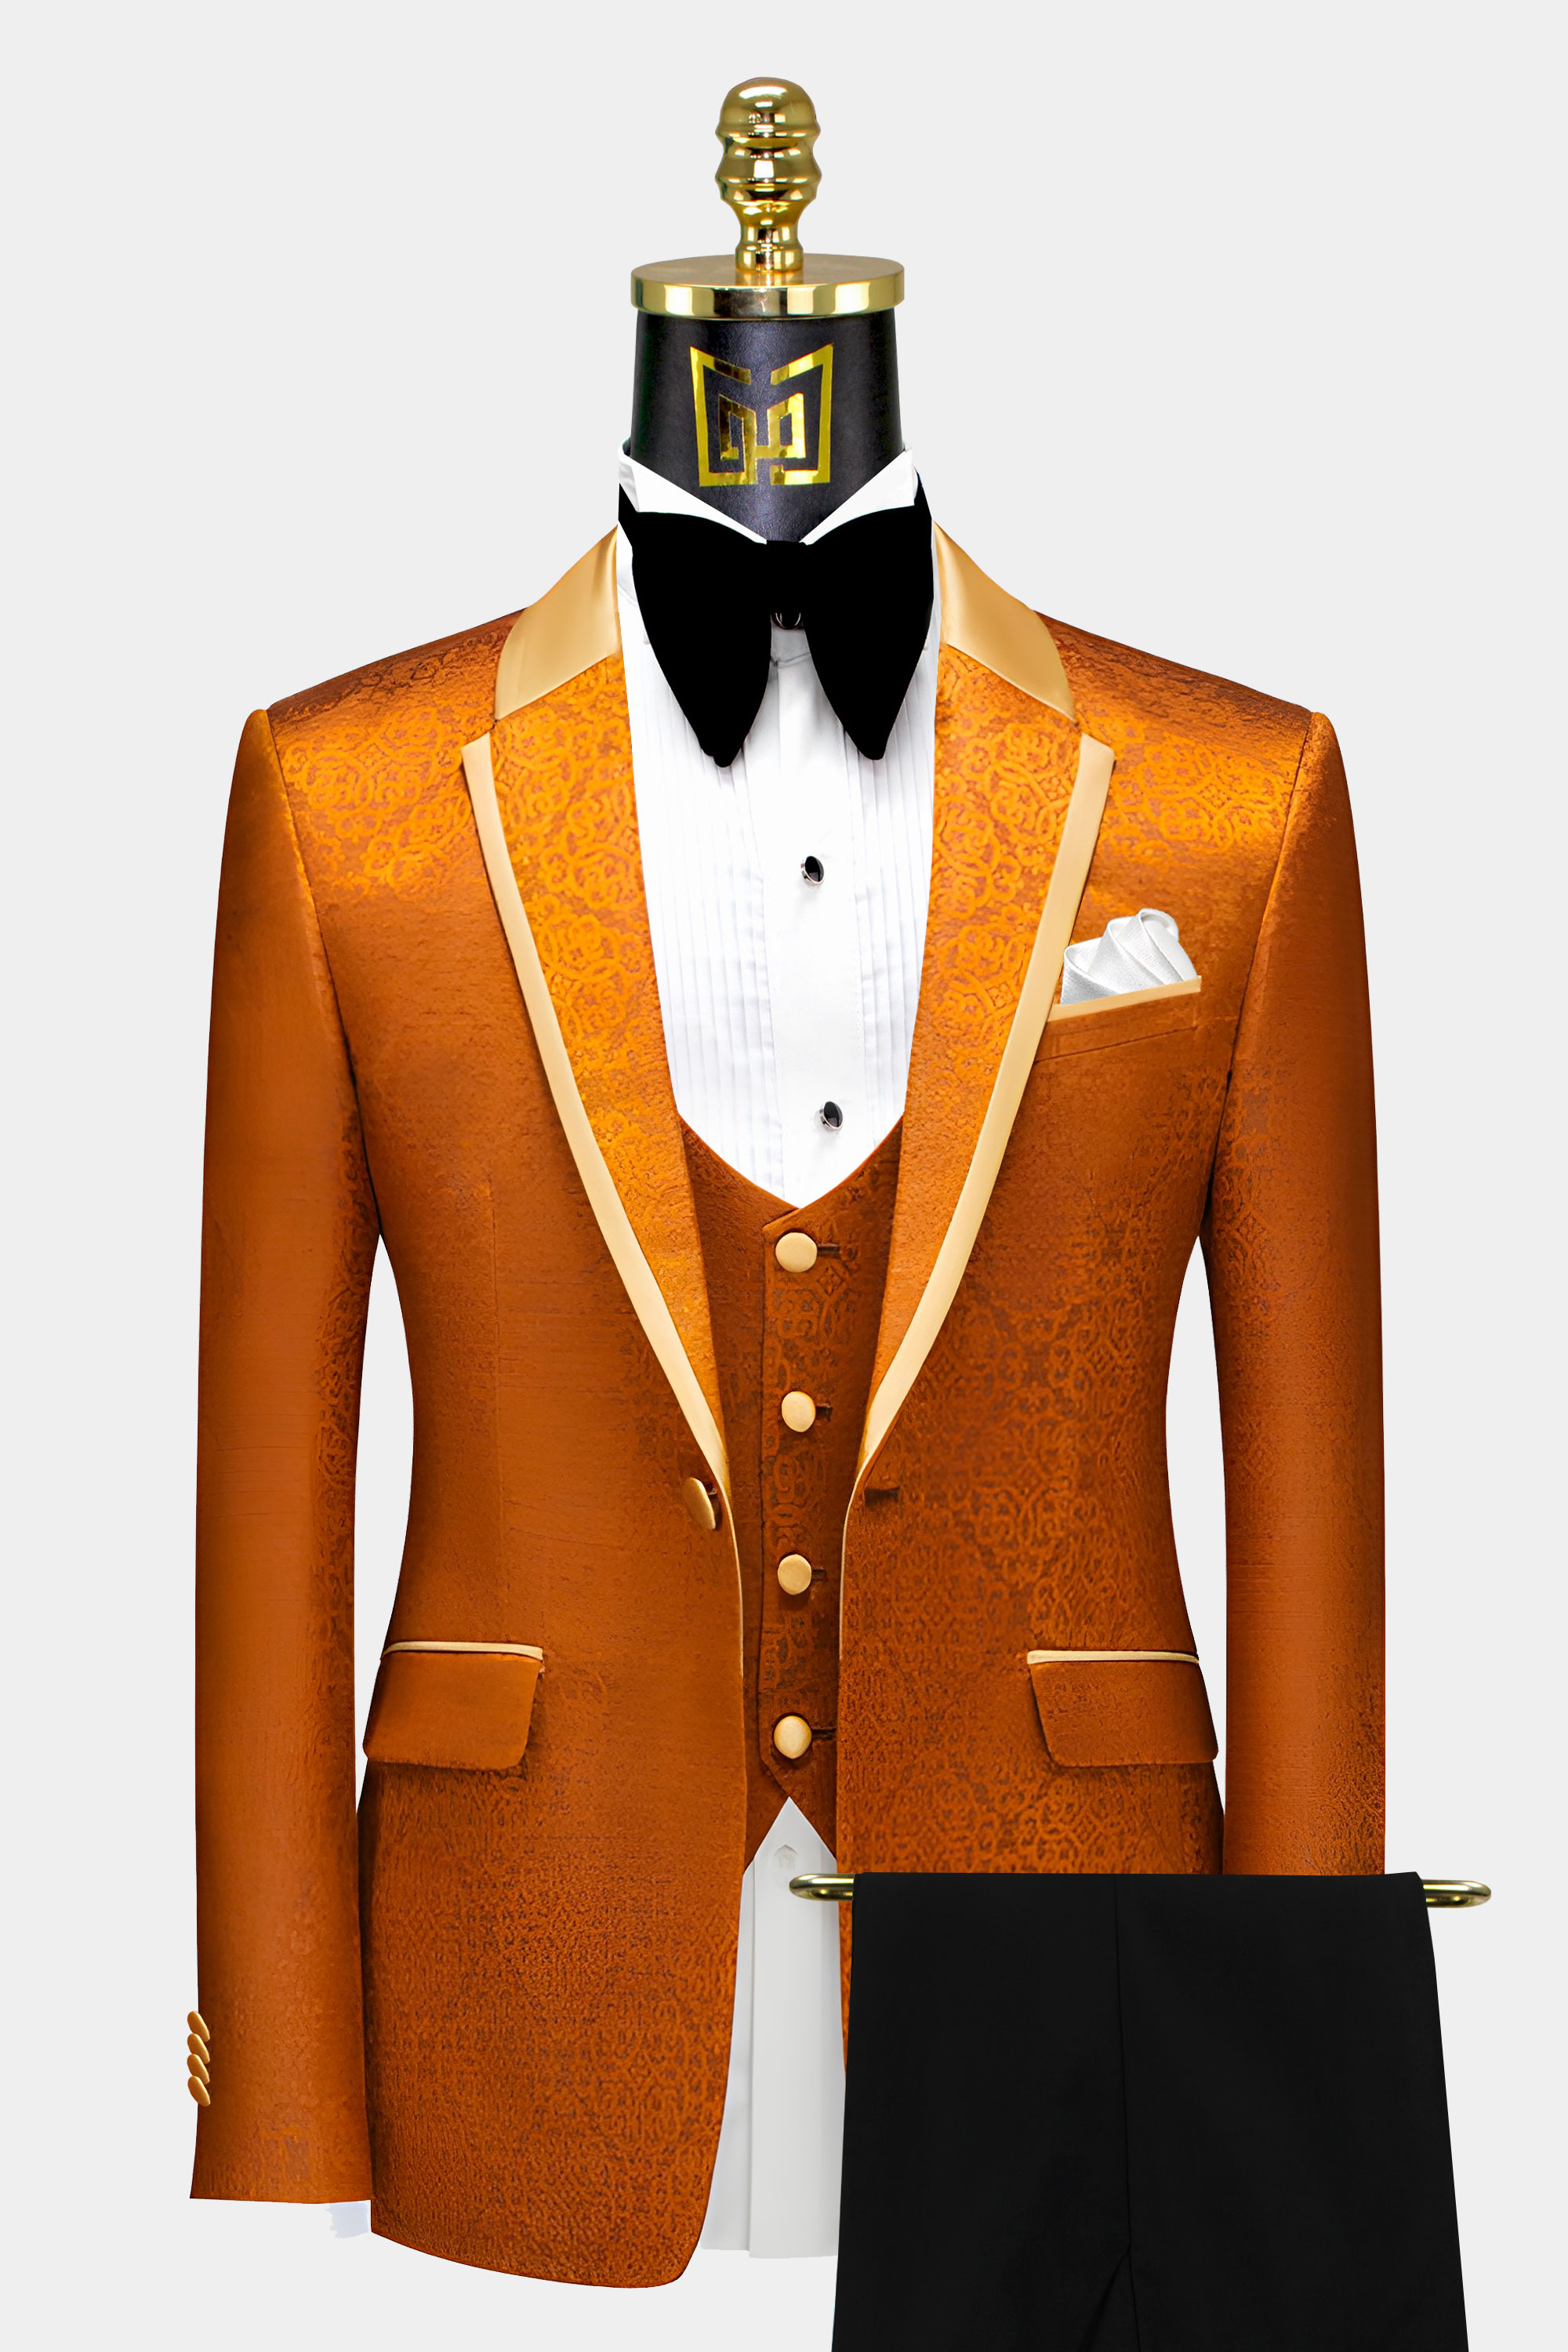 Tangerine-Orange-Tuxedo-Suit-from-Gentlemansguru.com